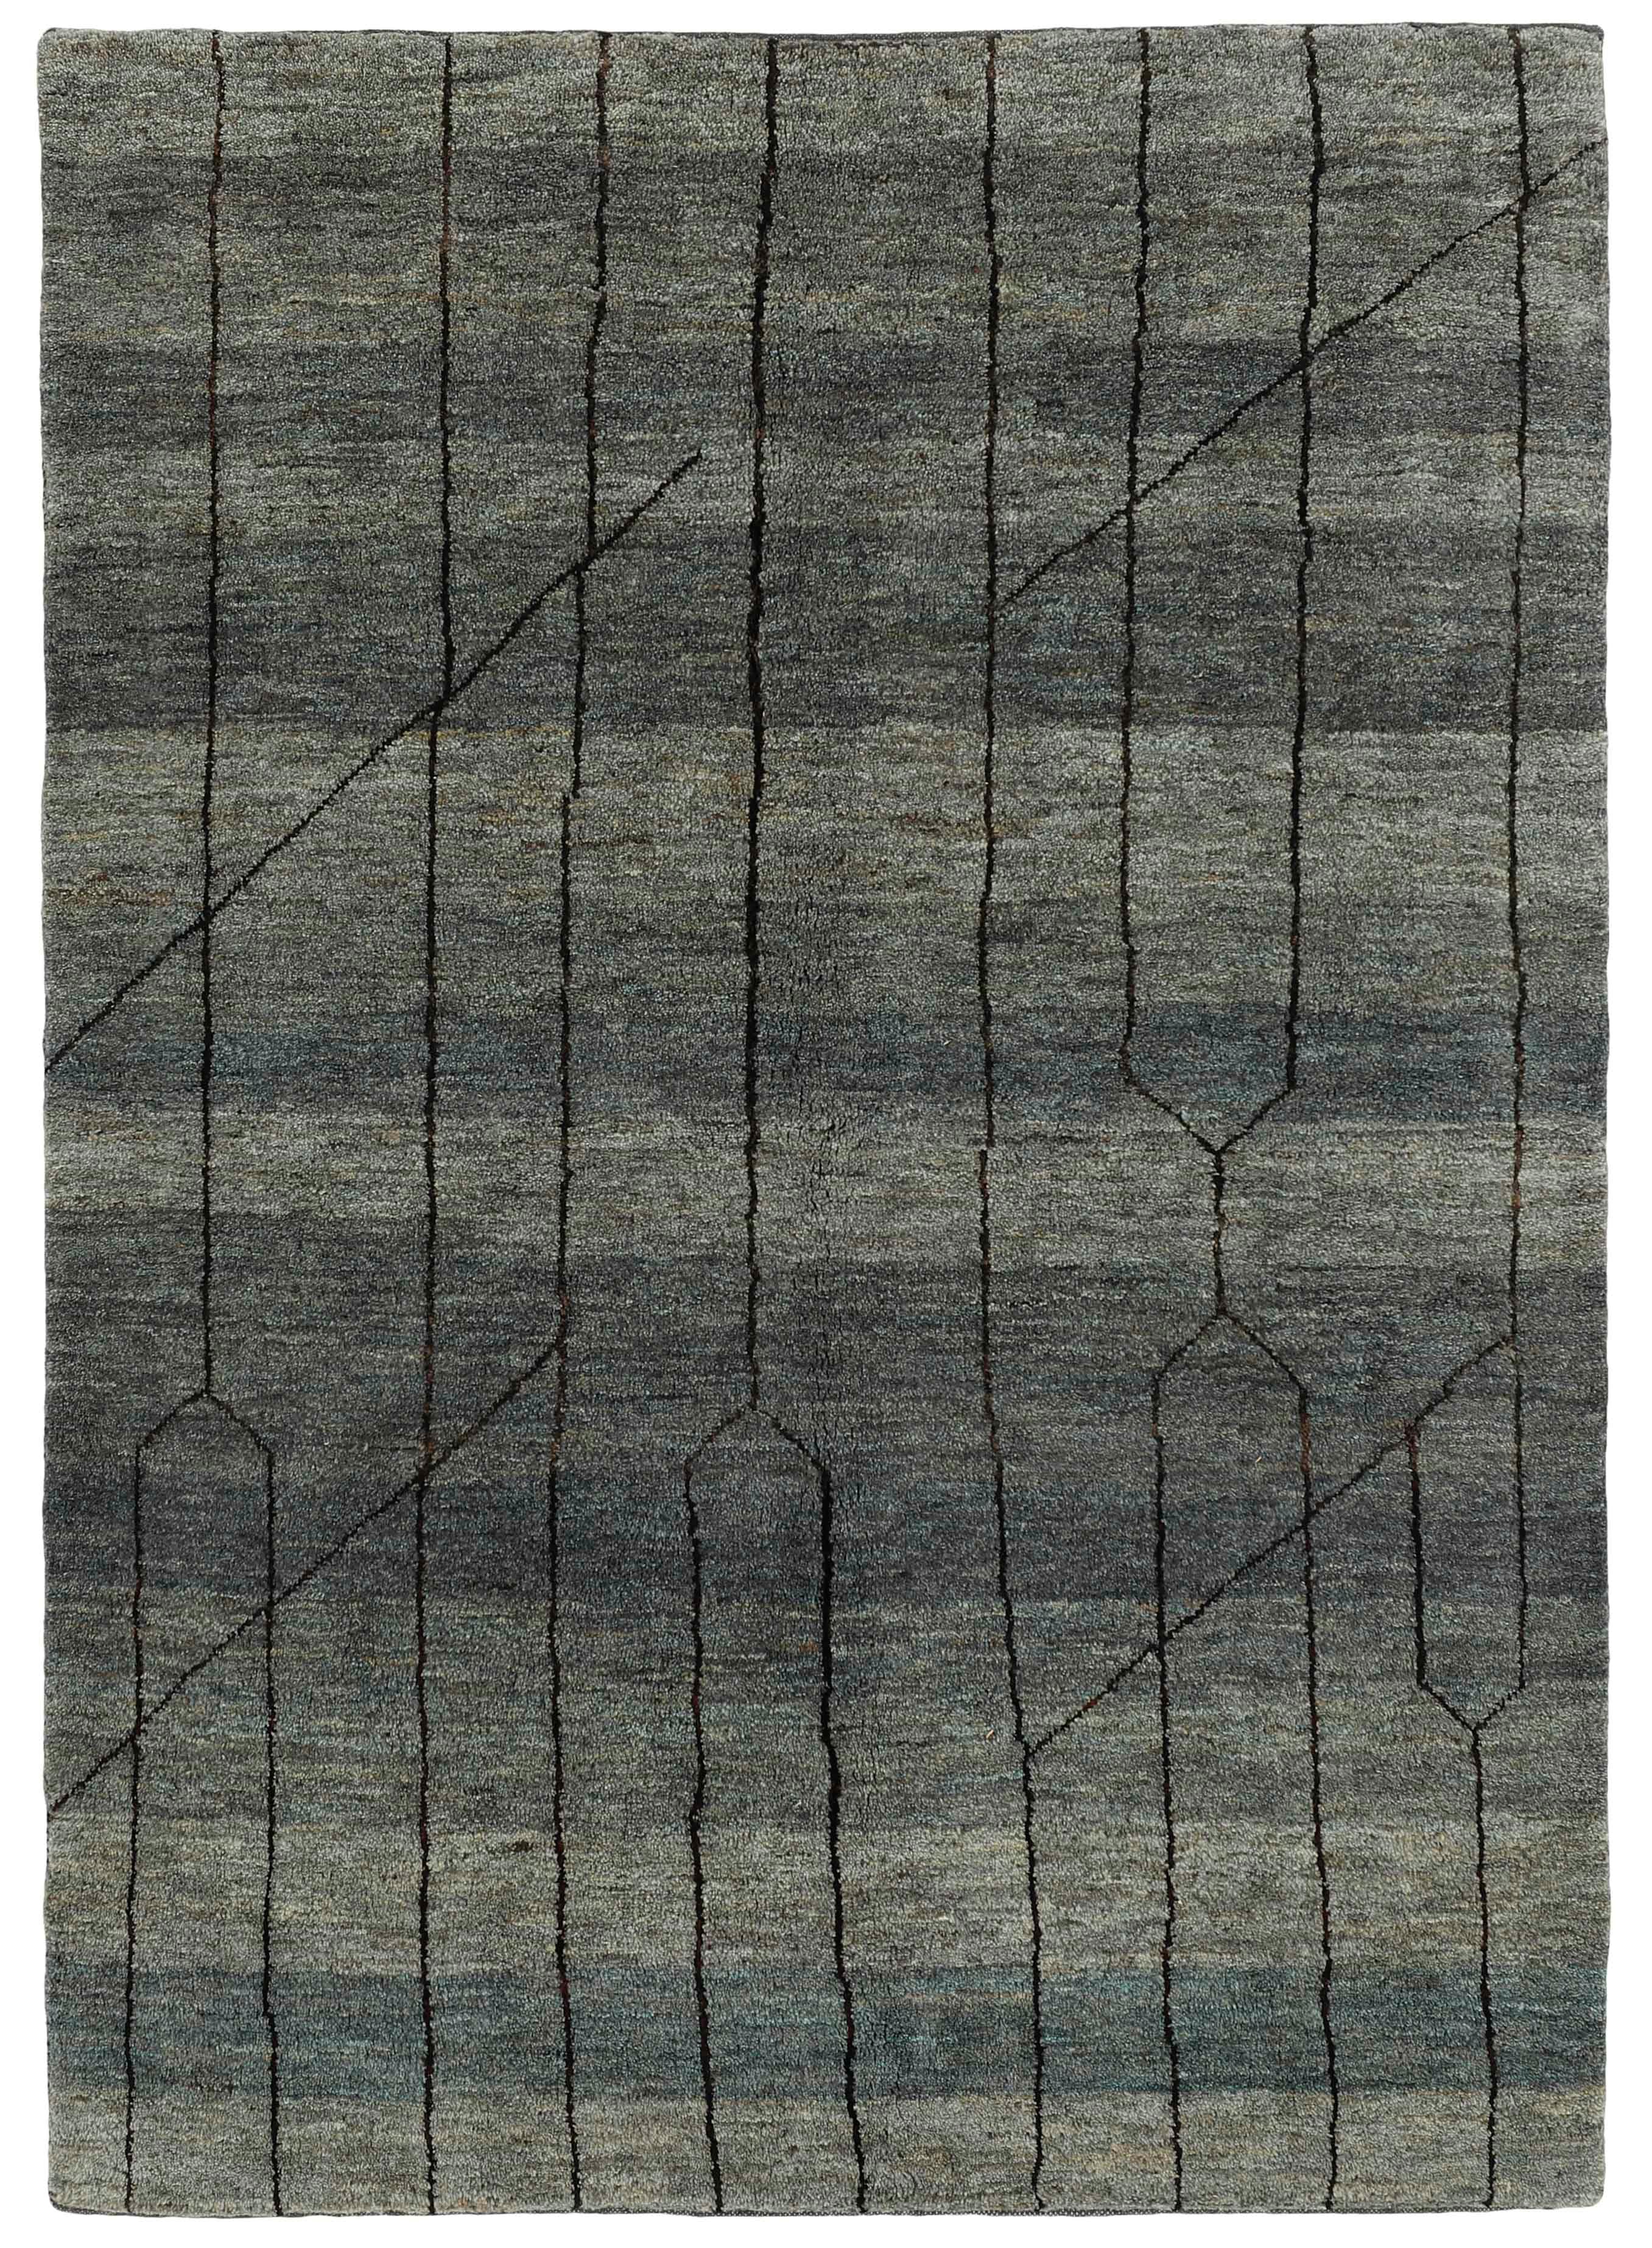 Authentic Oriental Kelim flatweave rug in grey, beige and brown